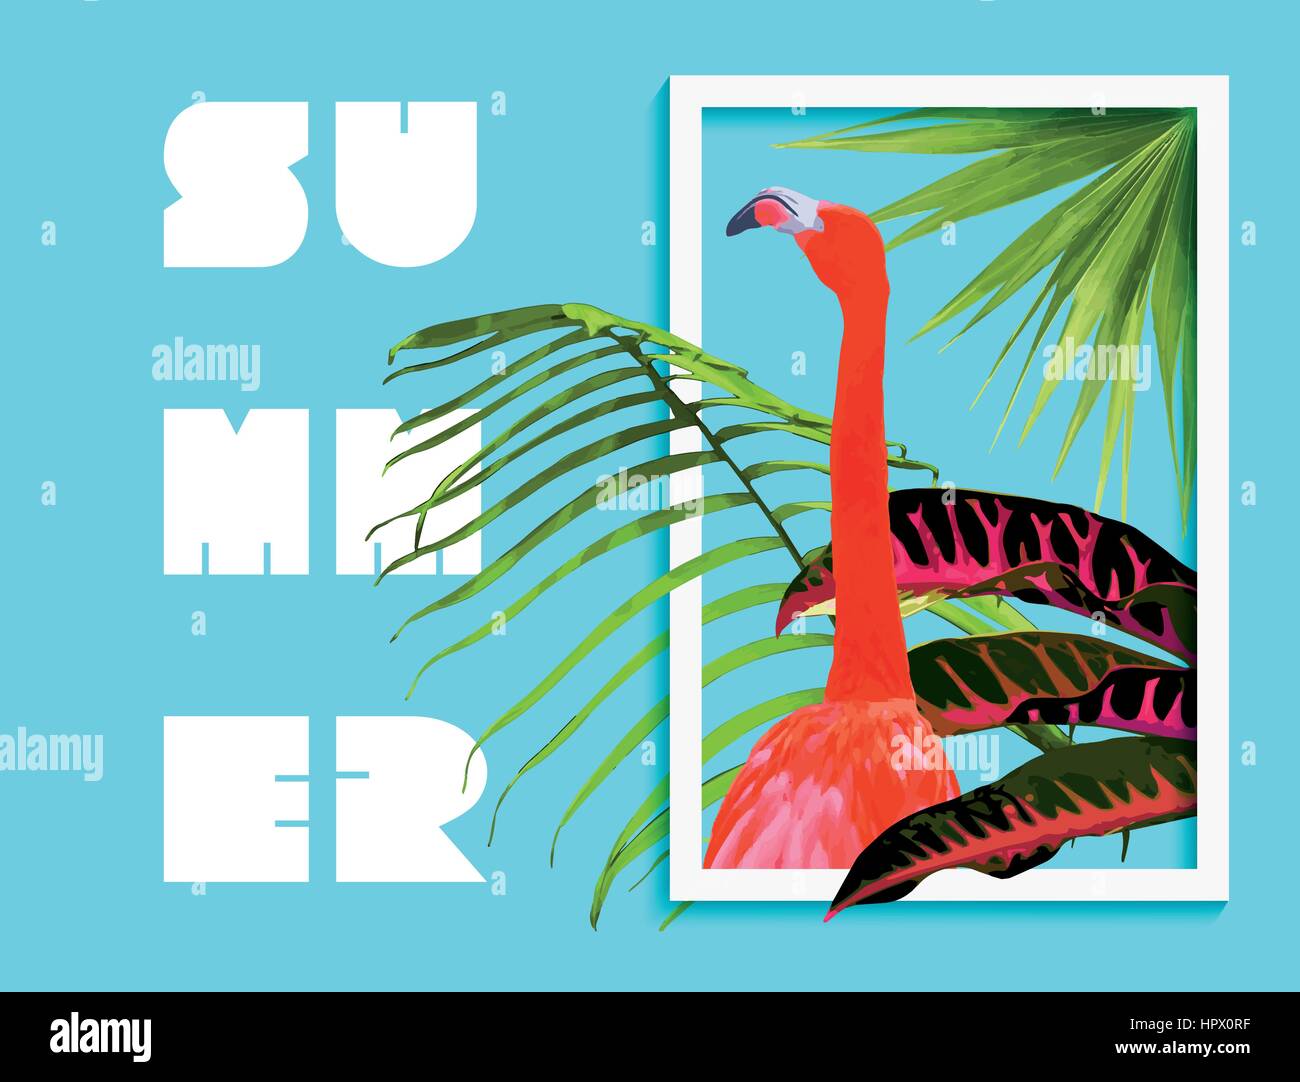 Tropischer Sommer Kunst mit Dschungel Natur Dekoration und Flamingo Vogel Innenrahmen. Palme Blätter Hintergrund, exotische Pflanzen in modernen grafischen Mode Stock Vektor